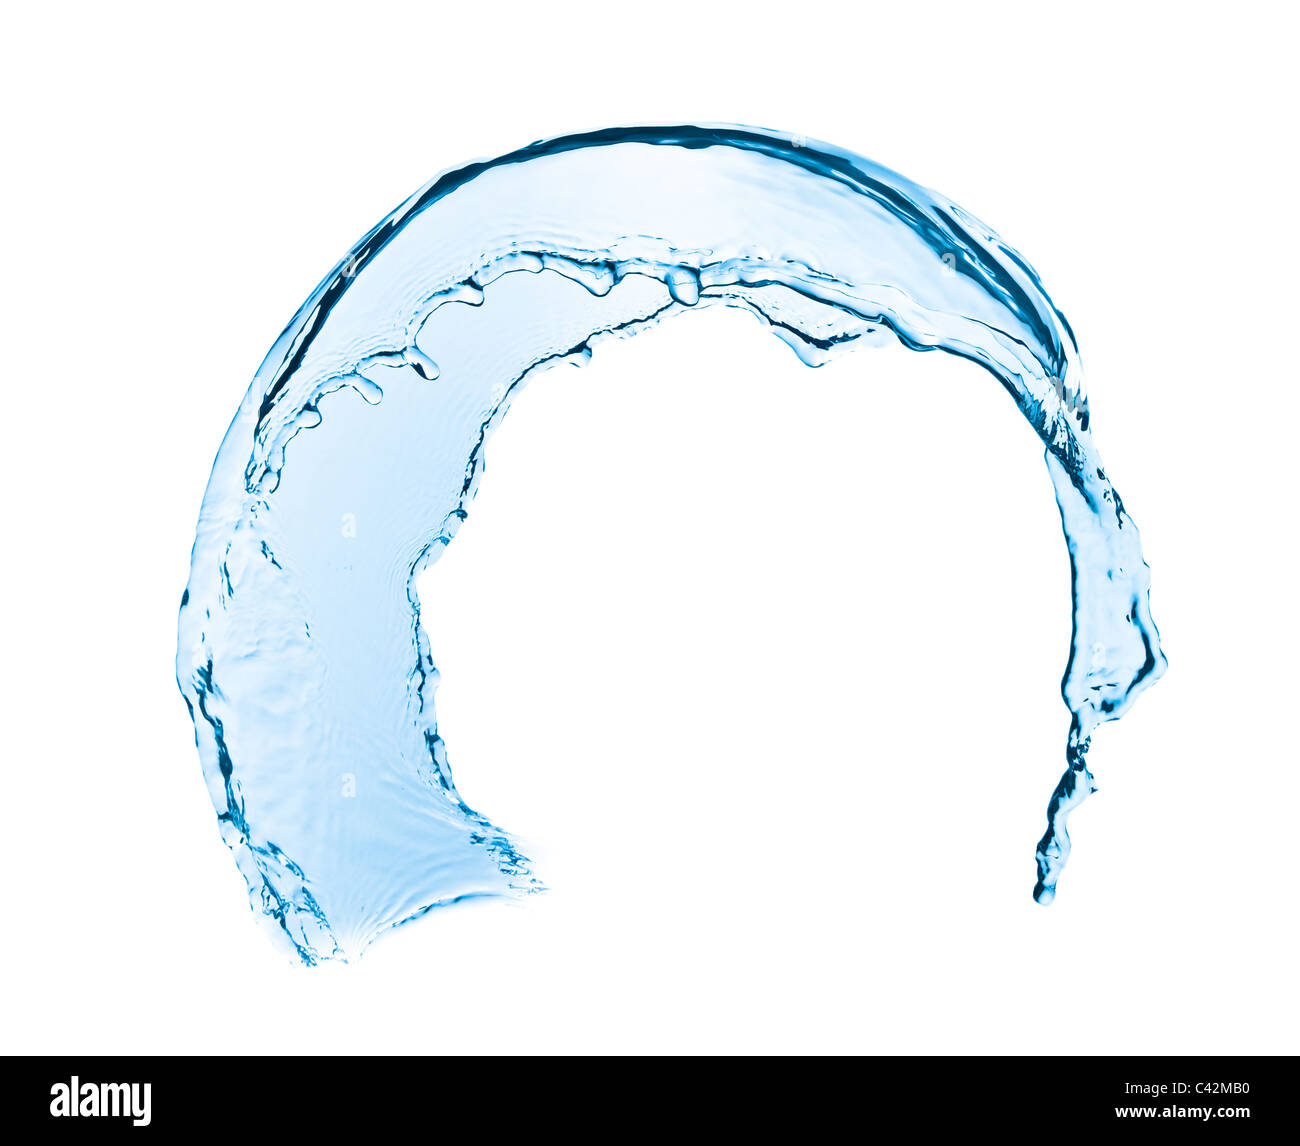 Spritzwasser Nahaufnahme isoliert auf weißem Hintergrund Stockfoto